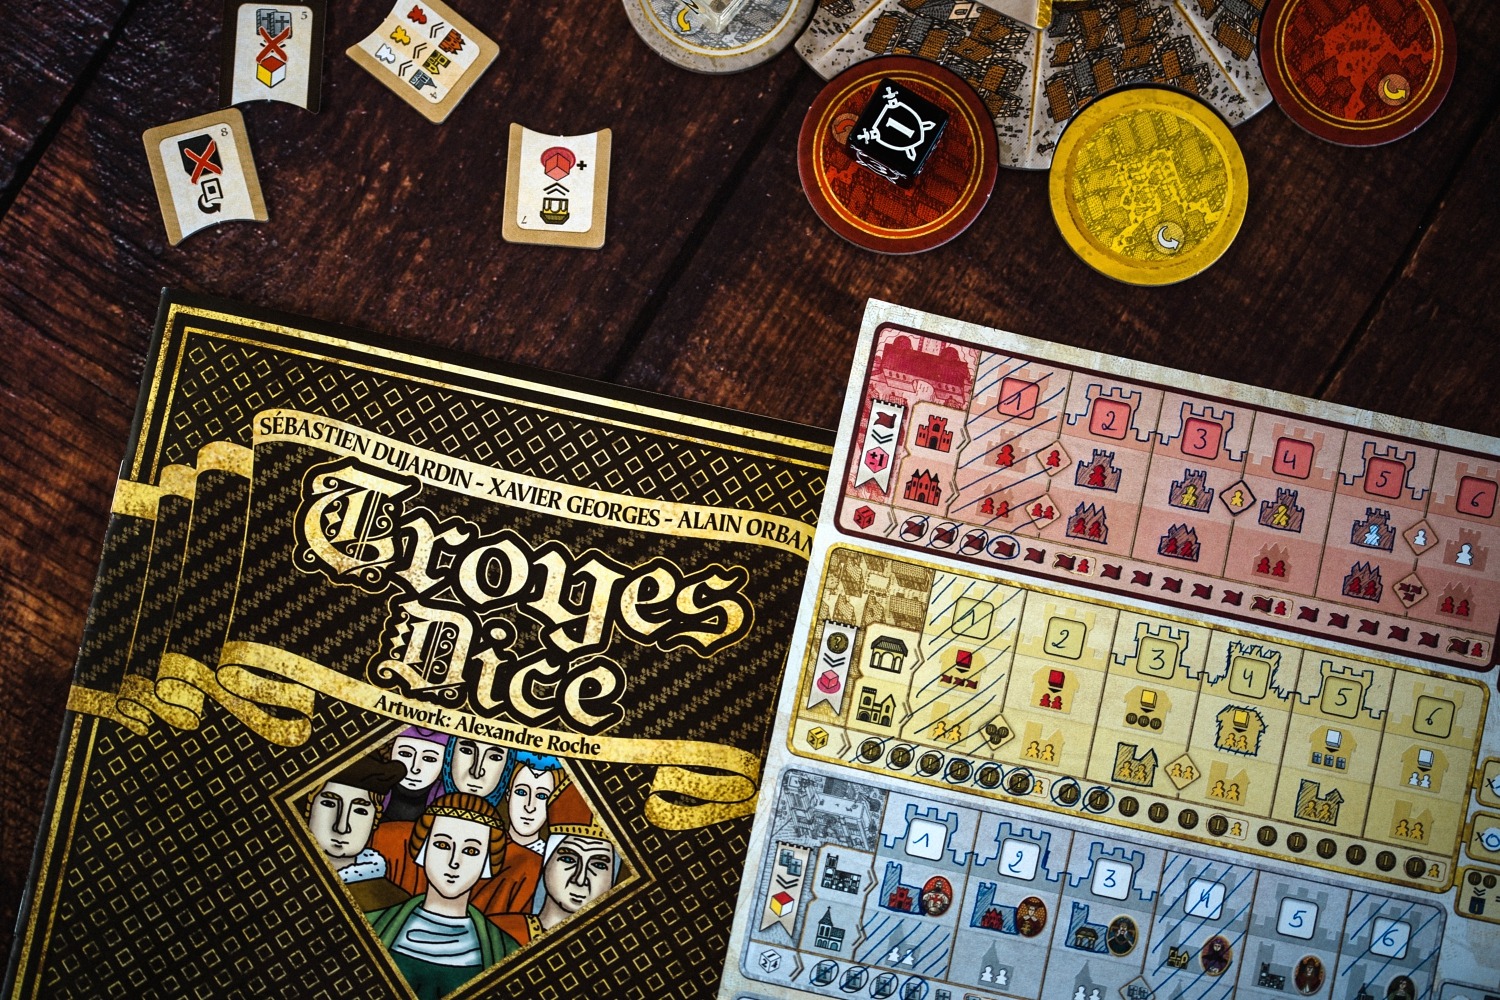 Troyes dice pearl games jeu de société boardgame